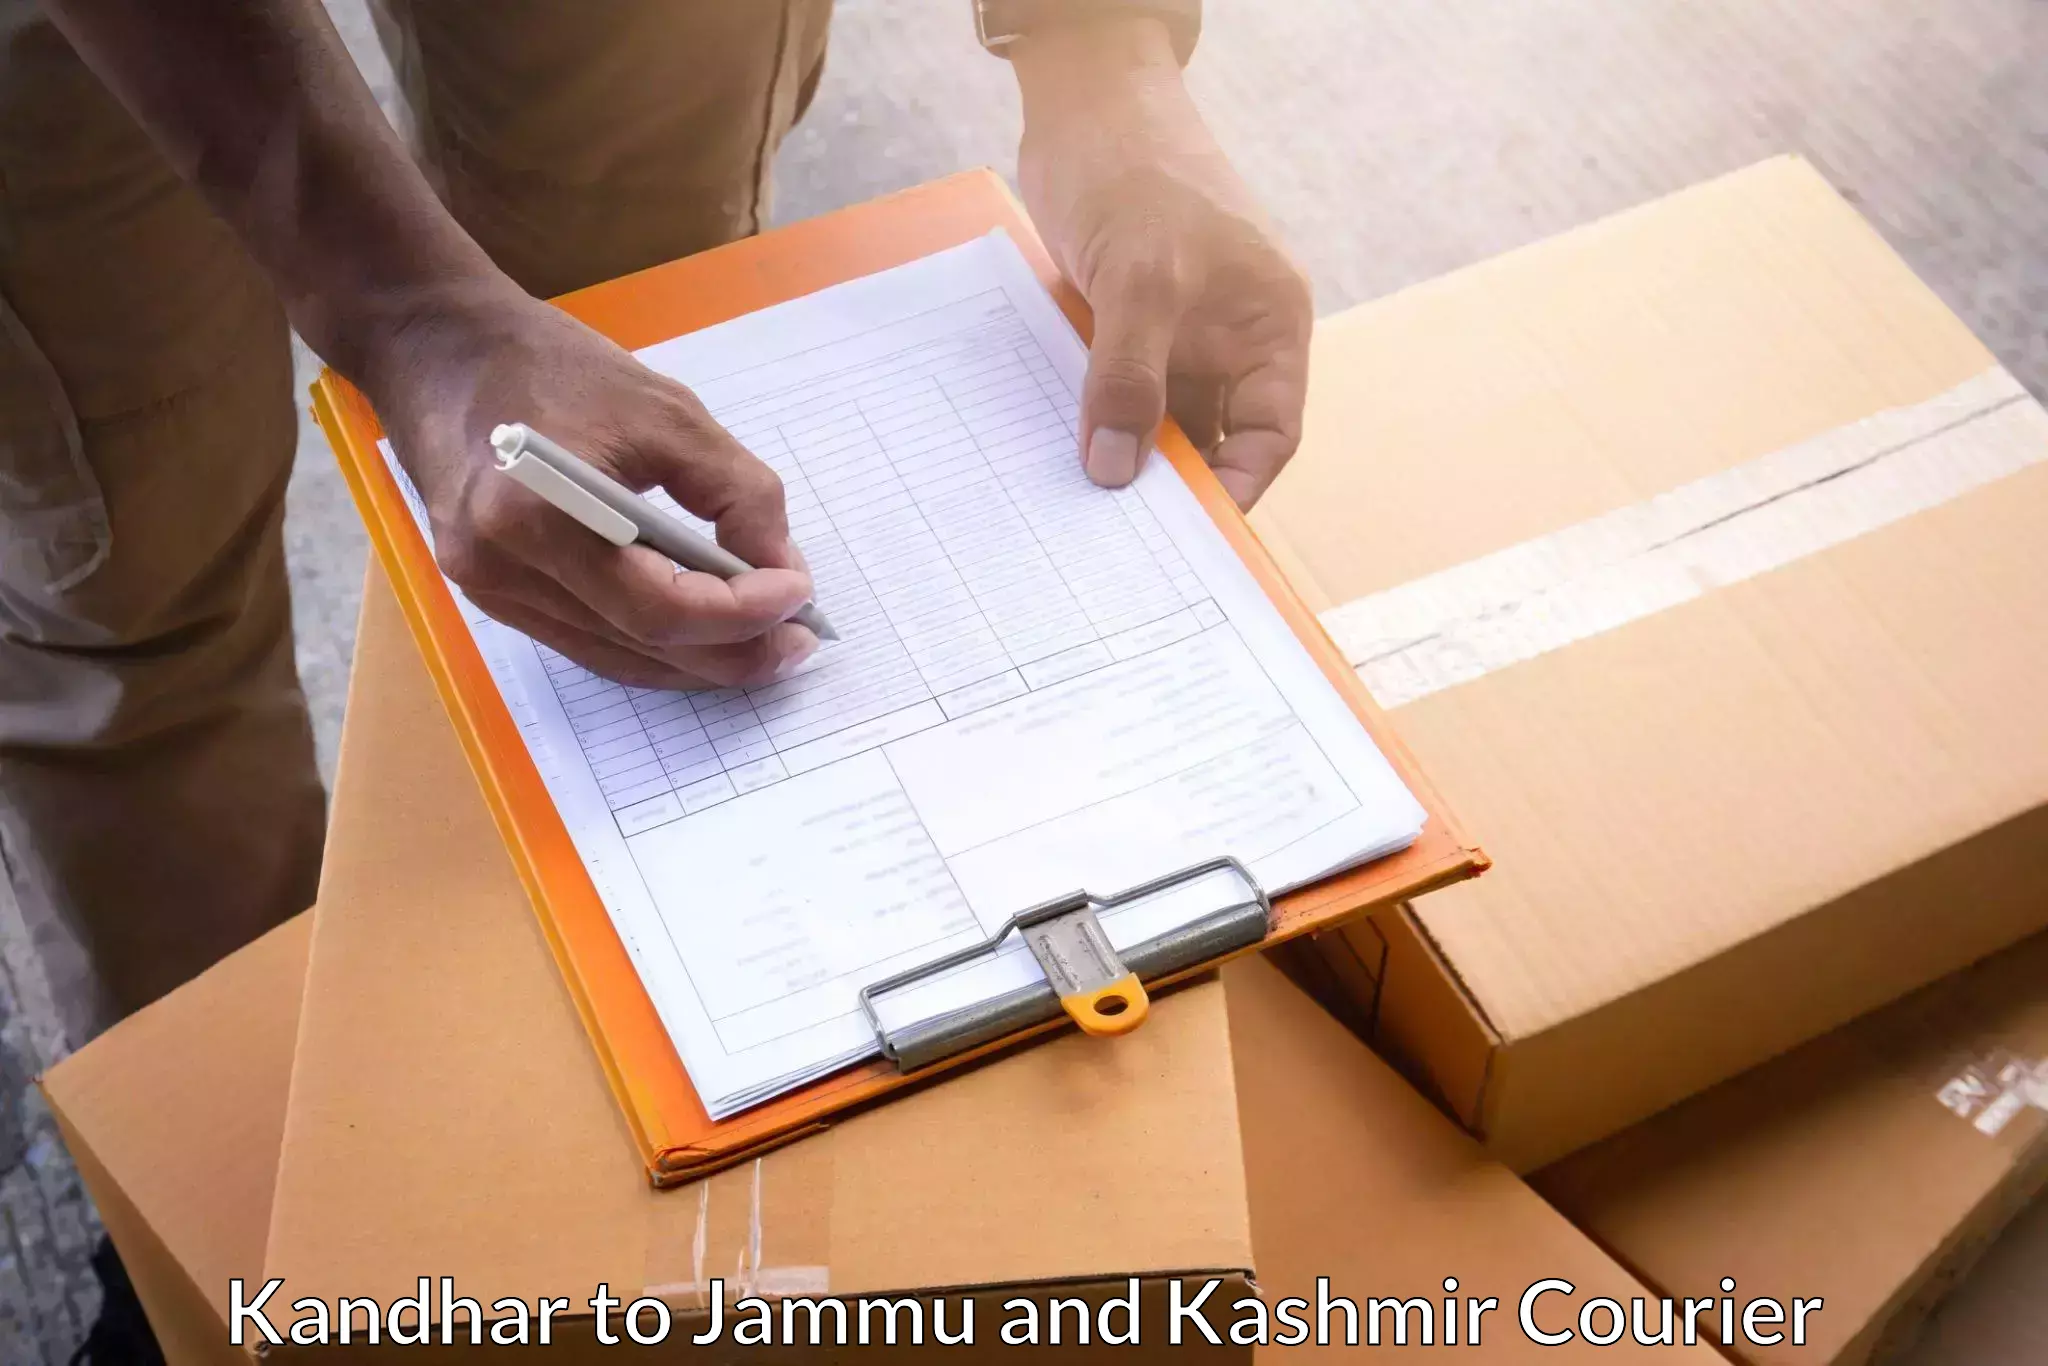 Nationwide delivery network in Kandhar to Kishtwar